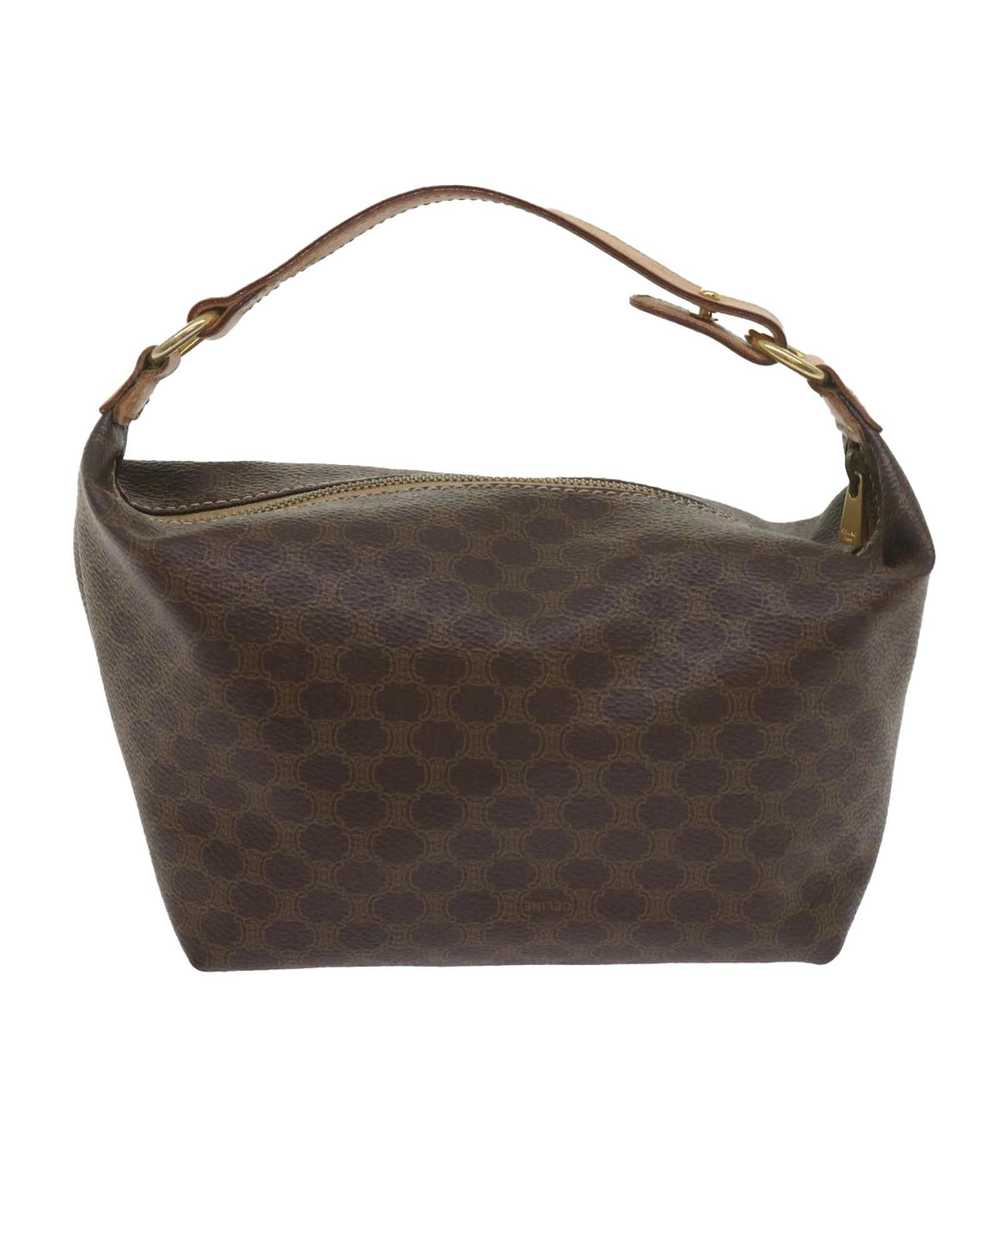 Celine Elegant Brown Canvas Bag by Luxury Designer - image 3